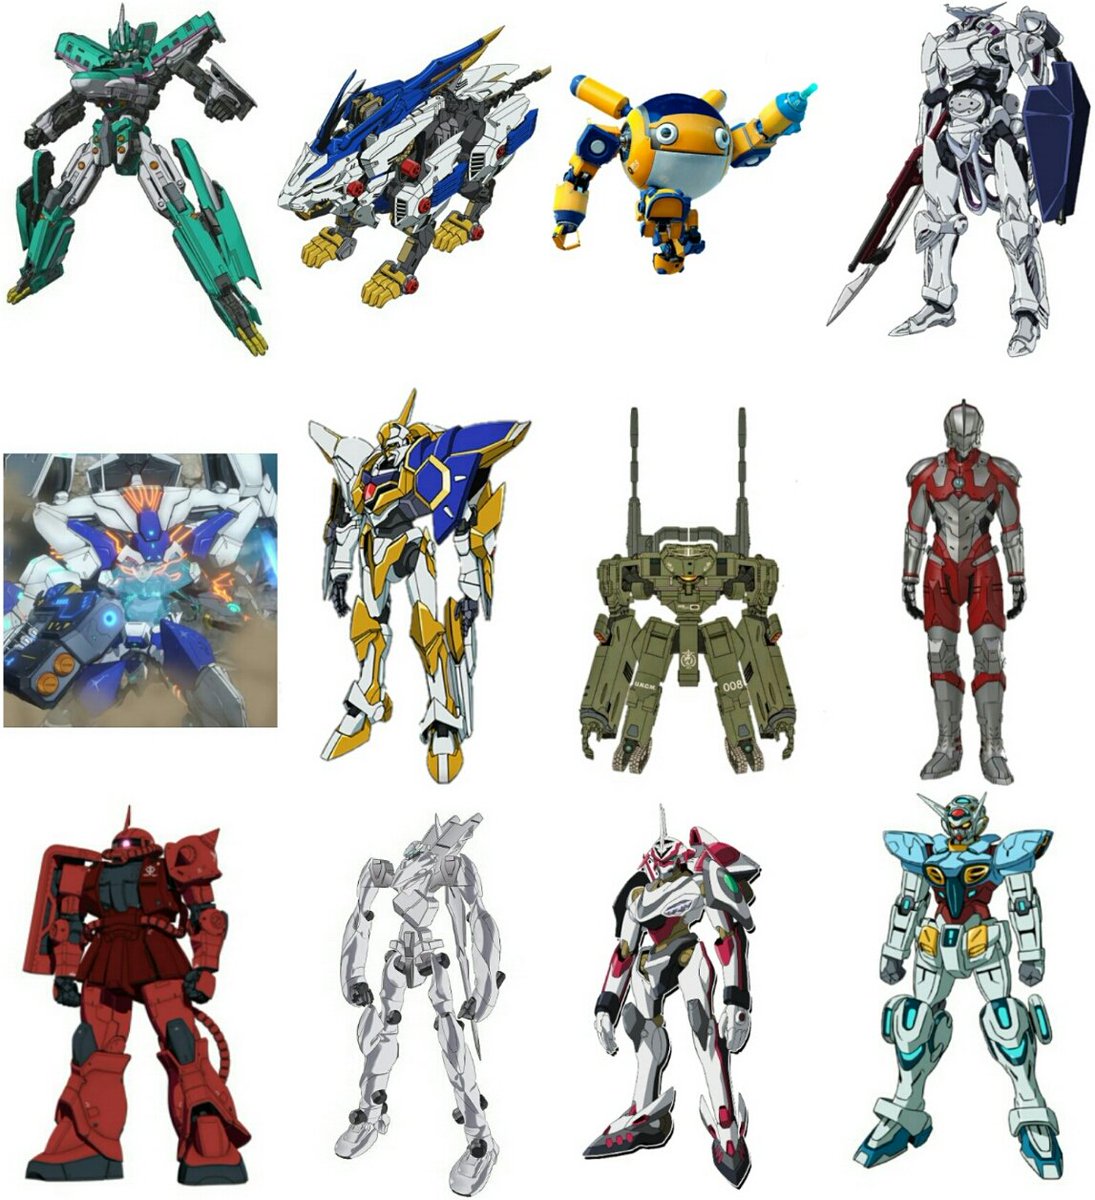 靖乃椎子 ロボット小説家 Sur Twitter 取り合えず立ち絵版 19年 ロボットアニメ パワードスーツ含むよ シンカリオン ゾイドワイルド ゾイド スペースバグ エガオノダイカ リヴィジョンズ コードギアス ヤマト22 Ultraman ガンダム Gundam